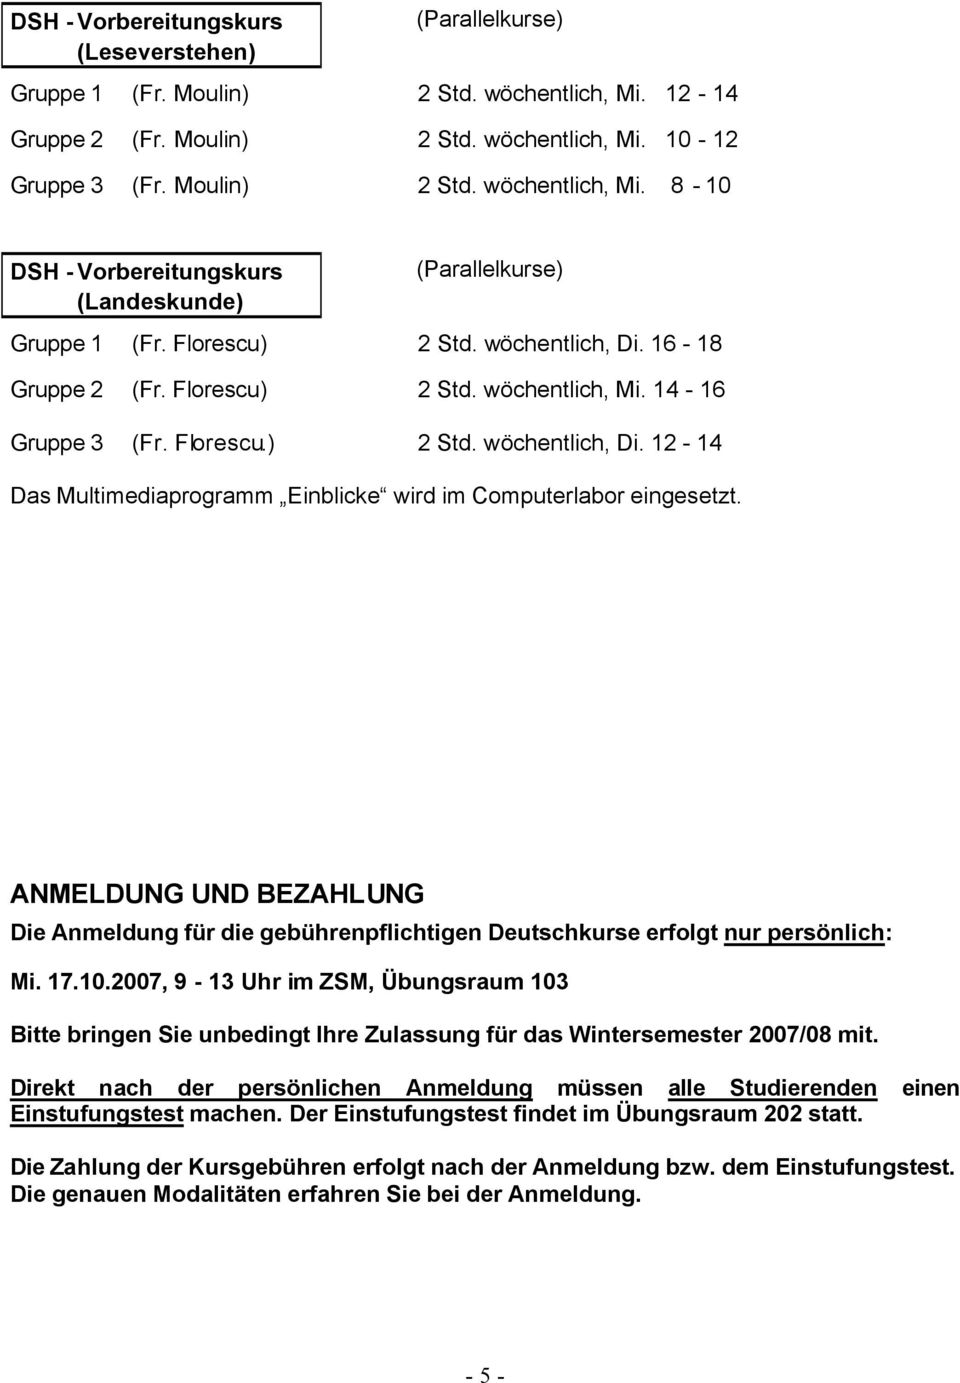 ANMELDUNG UND BEZAHLUNG Die Anmeldung für die gebührenpflichtigen Deutschkurse erfolgt nur persönlich: Mi. 17.10.